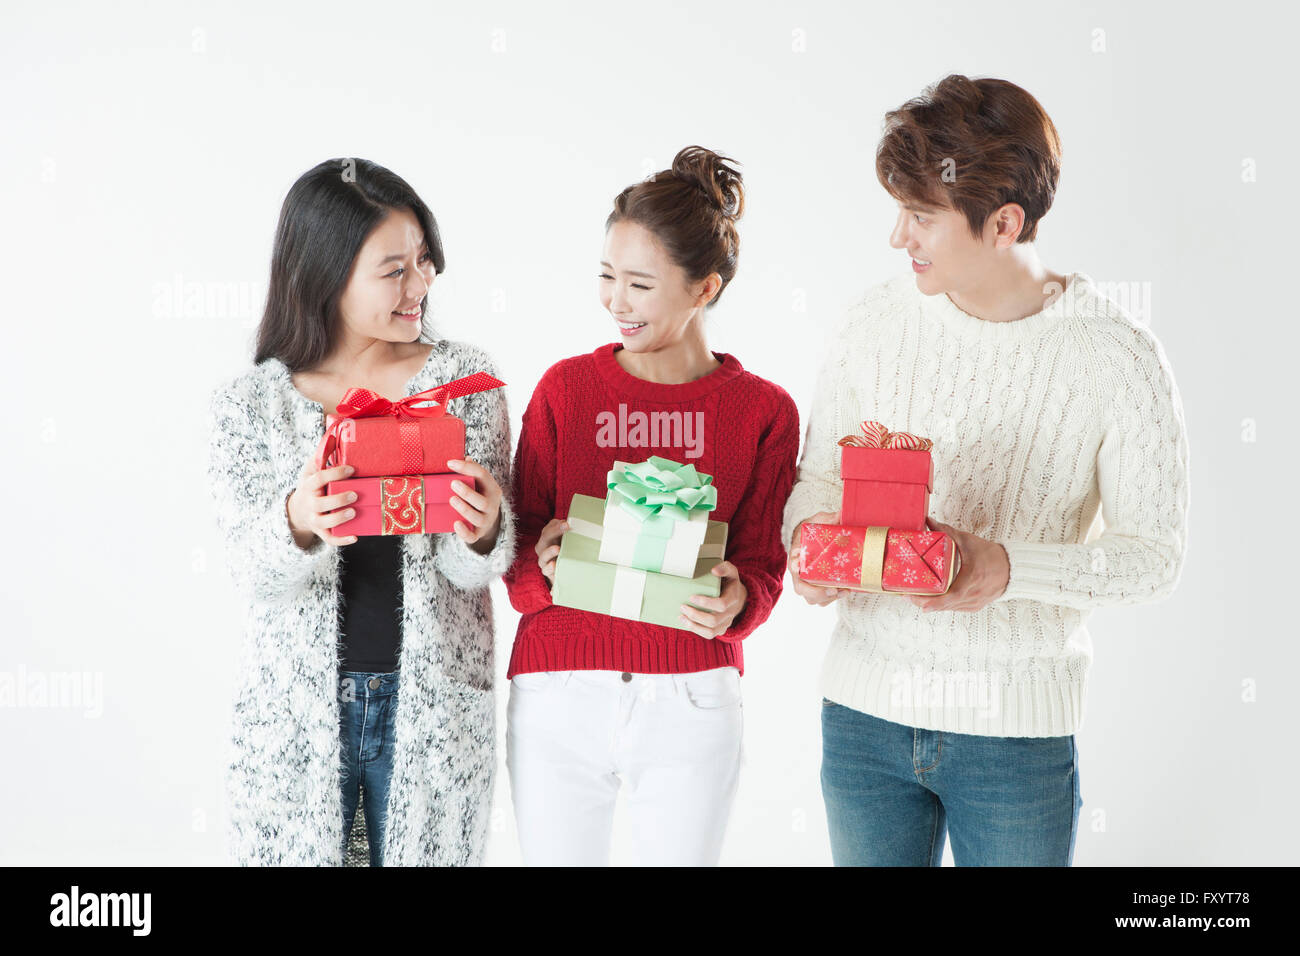 Trois jeunes gens souriants boîtes holding present Banque D'Images